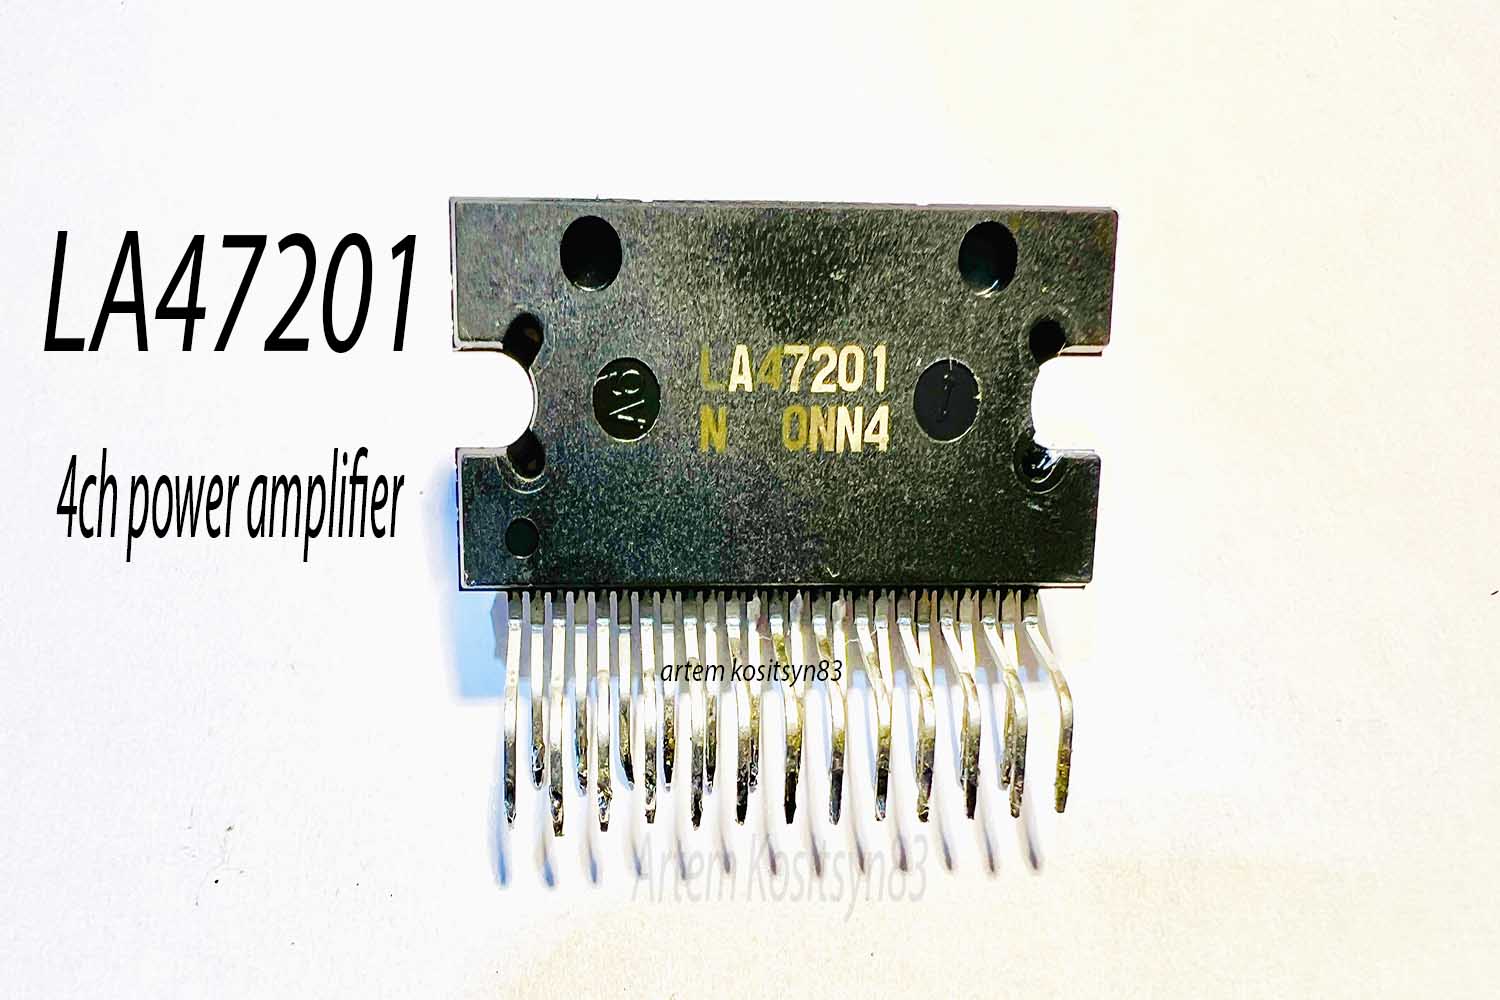 Подробнее о статье LA47201.4-ch power amplifier